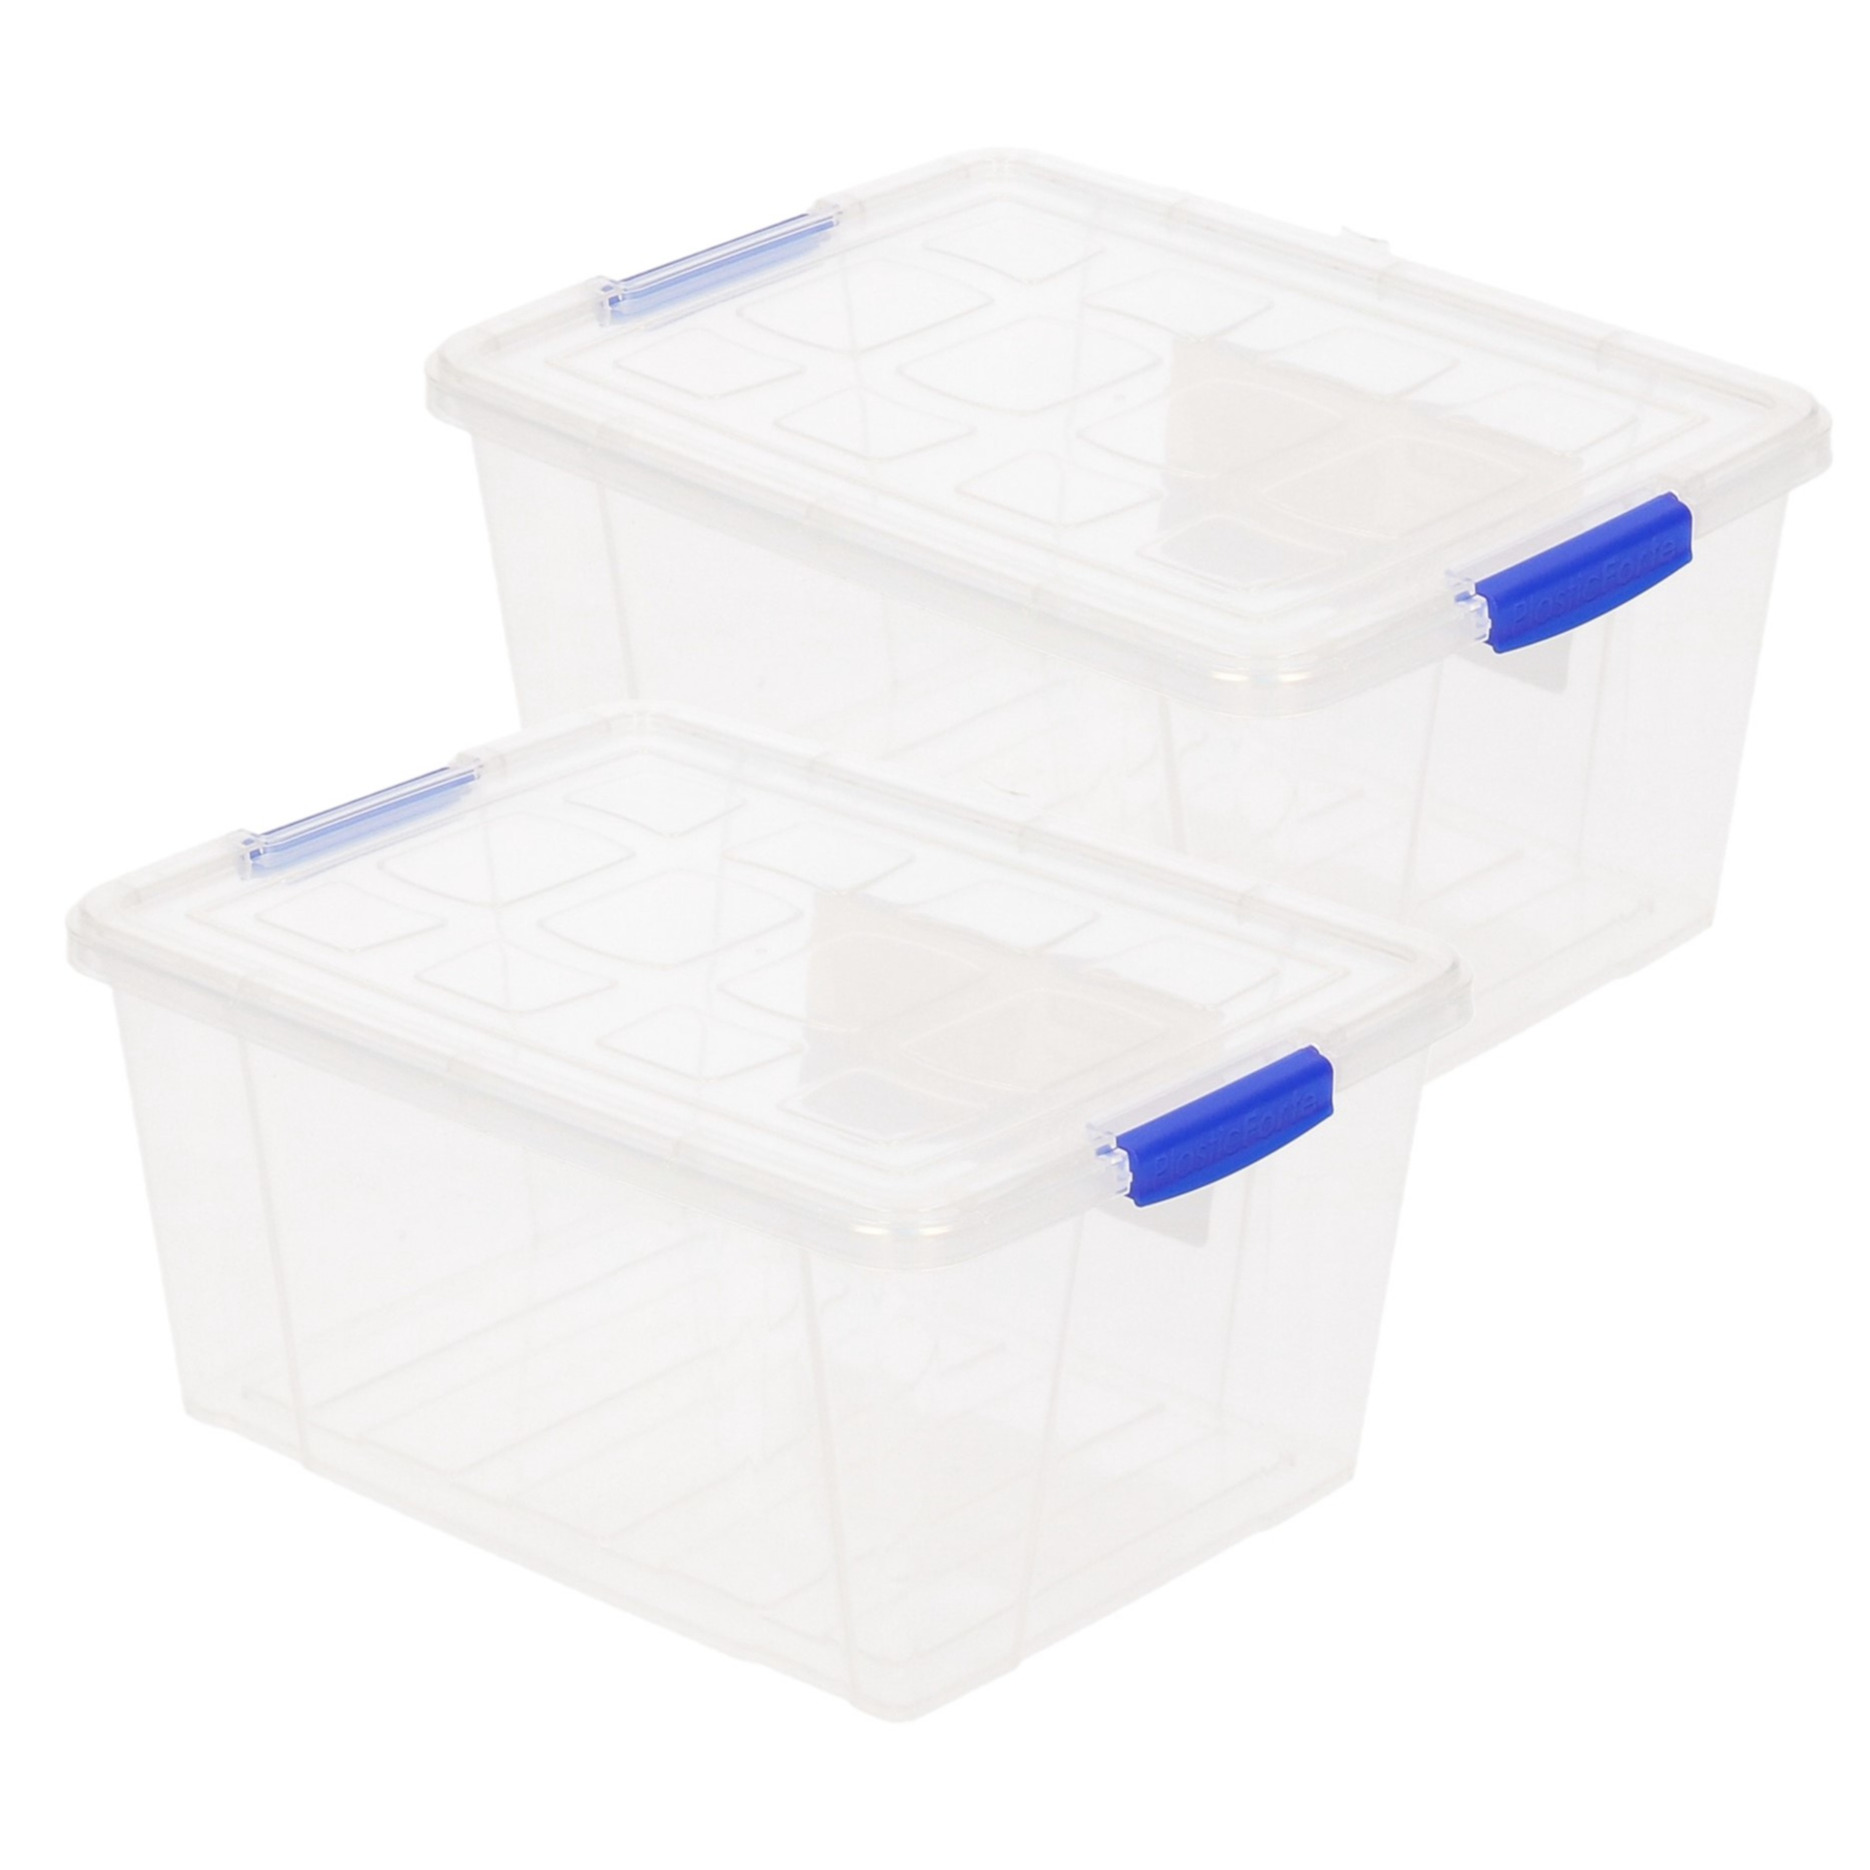 2x stuks opslagboxen-bakken-organizers met deksel 16 liter 40 x 30 x 21 cm transparant plastic